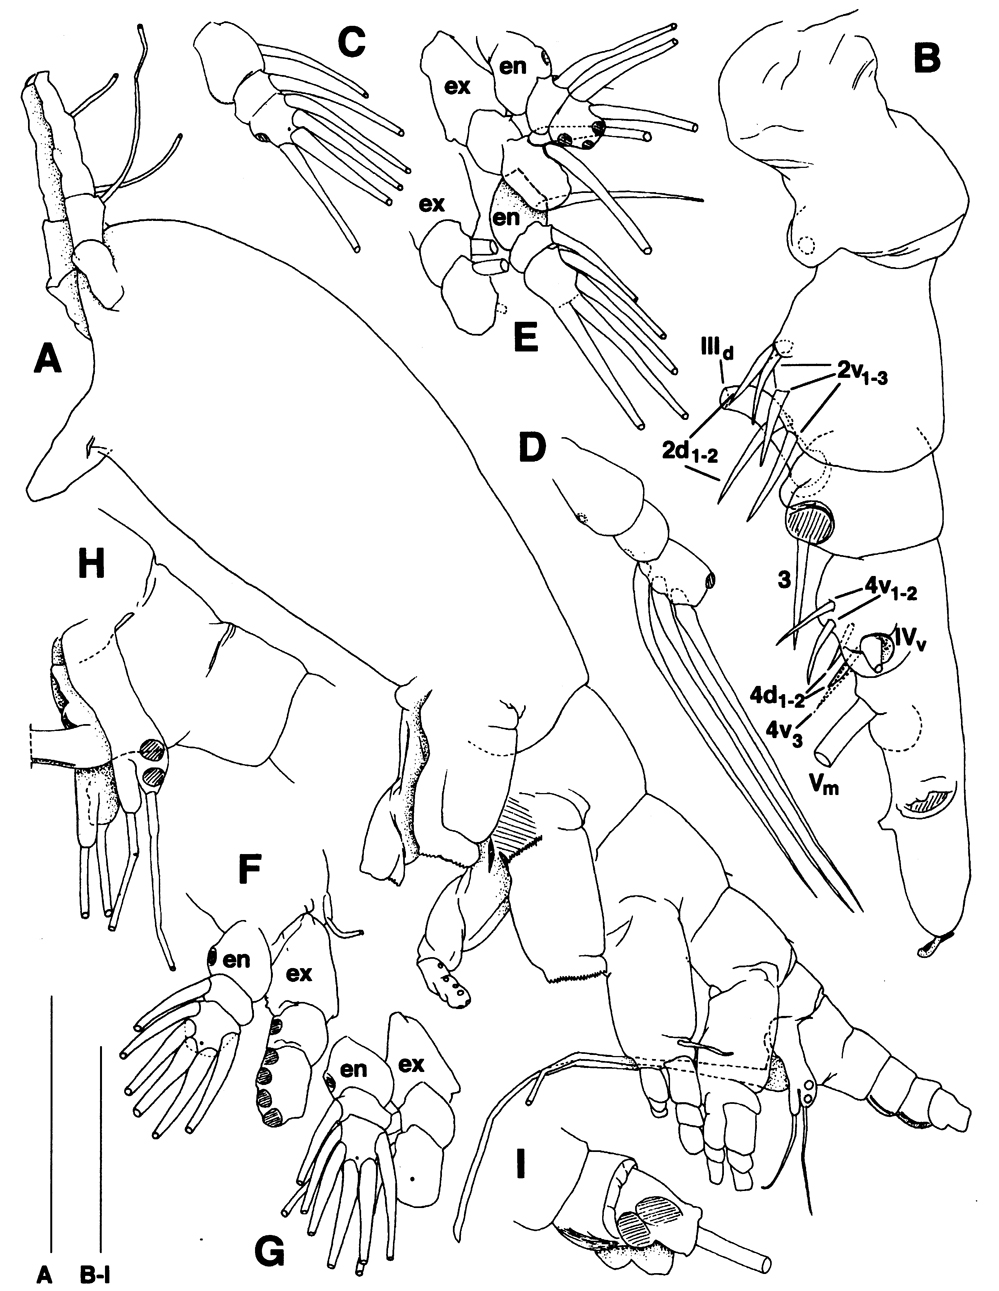 Espce Maemonstrilla turgida - Planche 10 de figures morphologiques